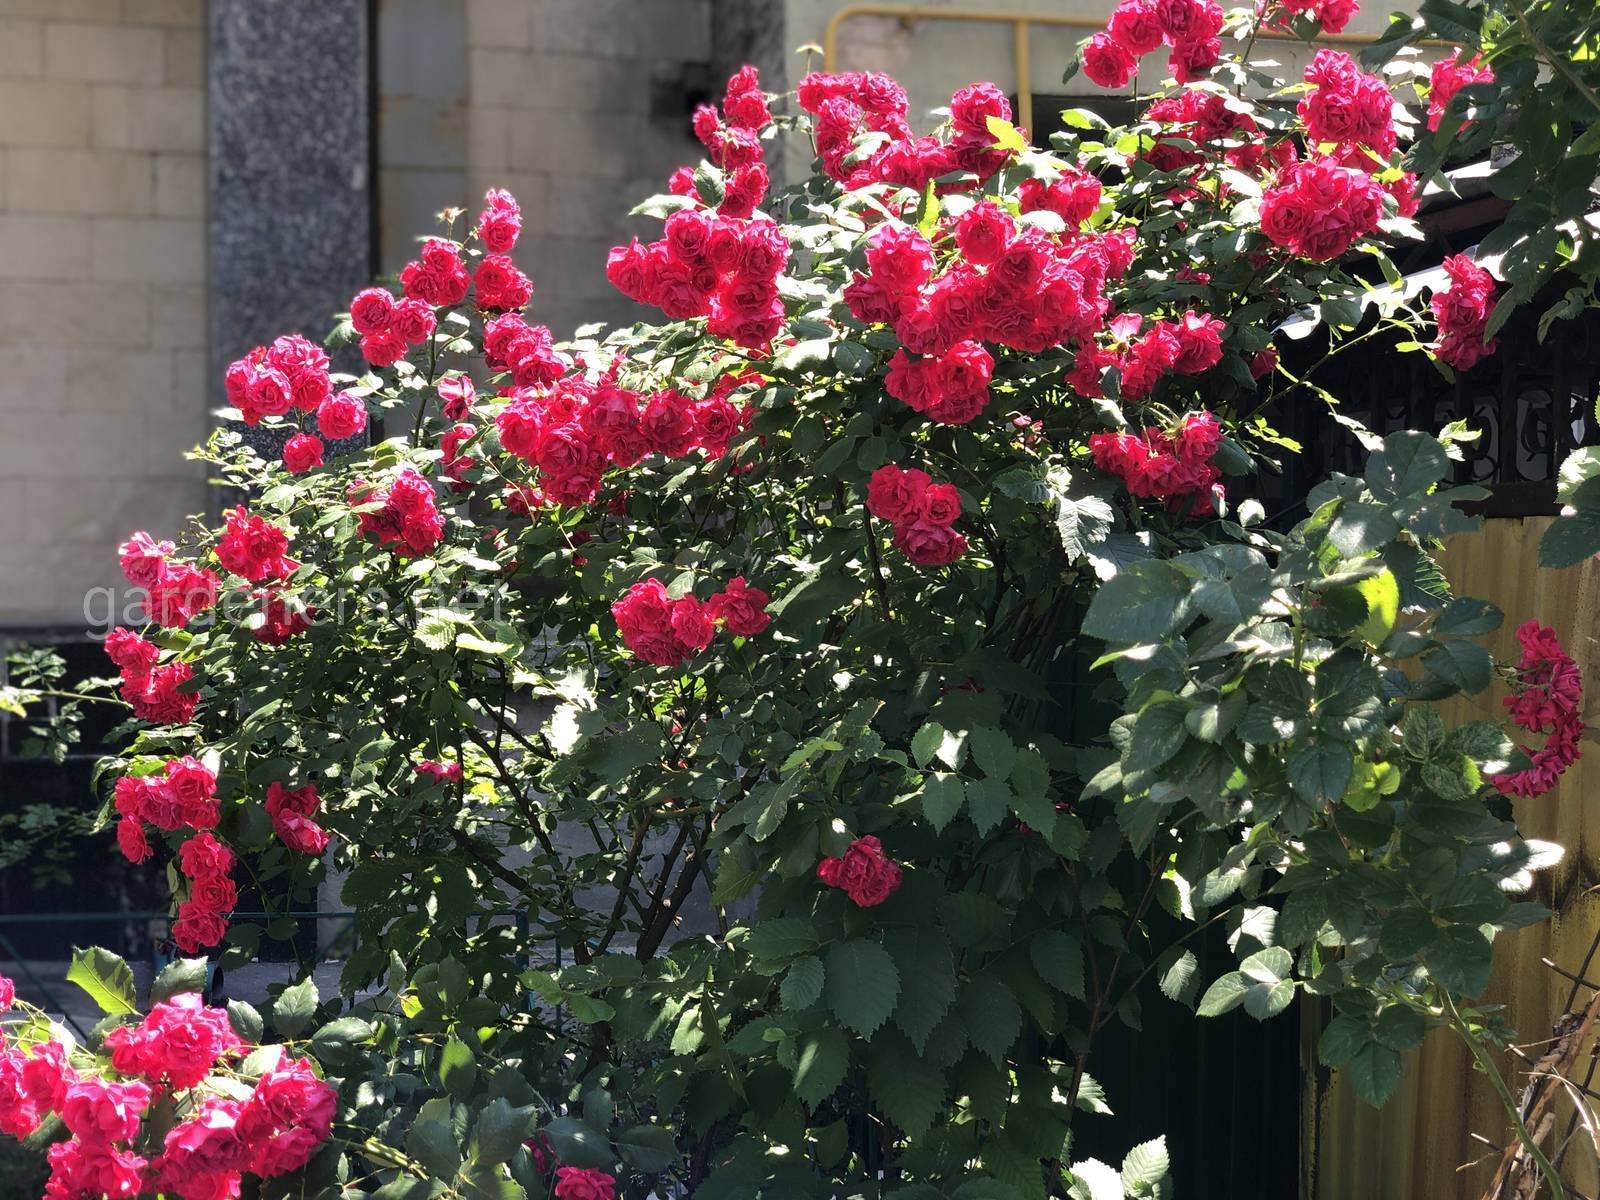 Фантастическая роза профессор хендель с эффектным двухцветным окрасом